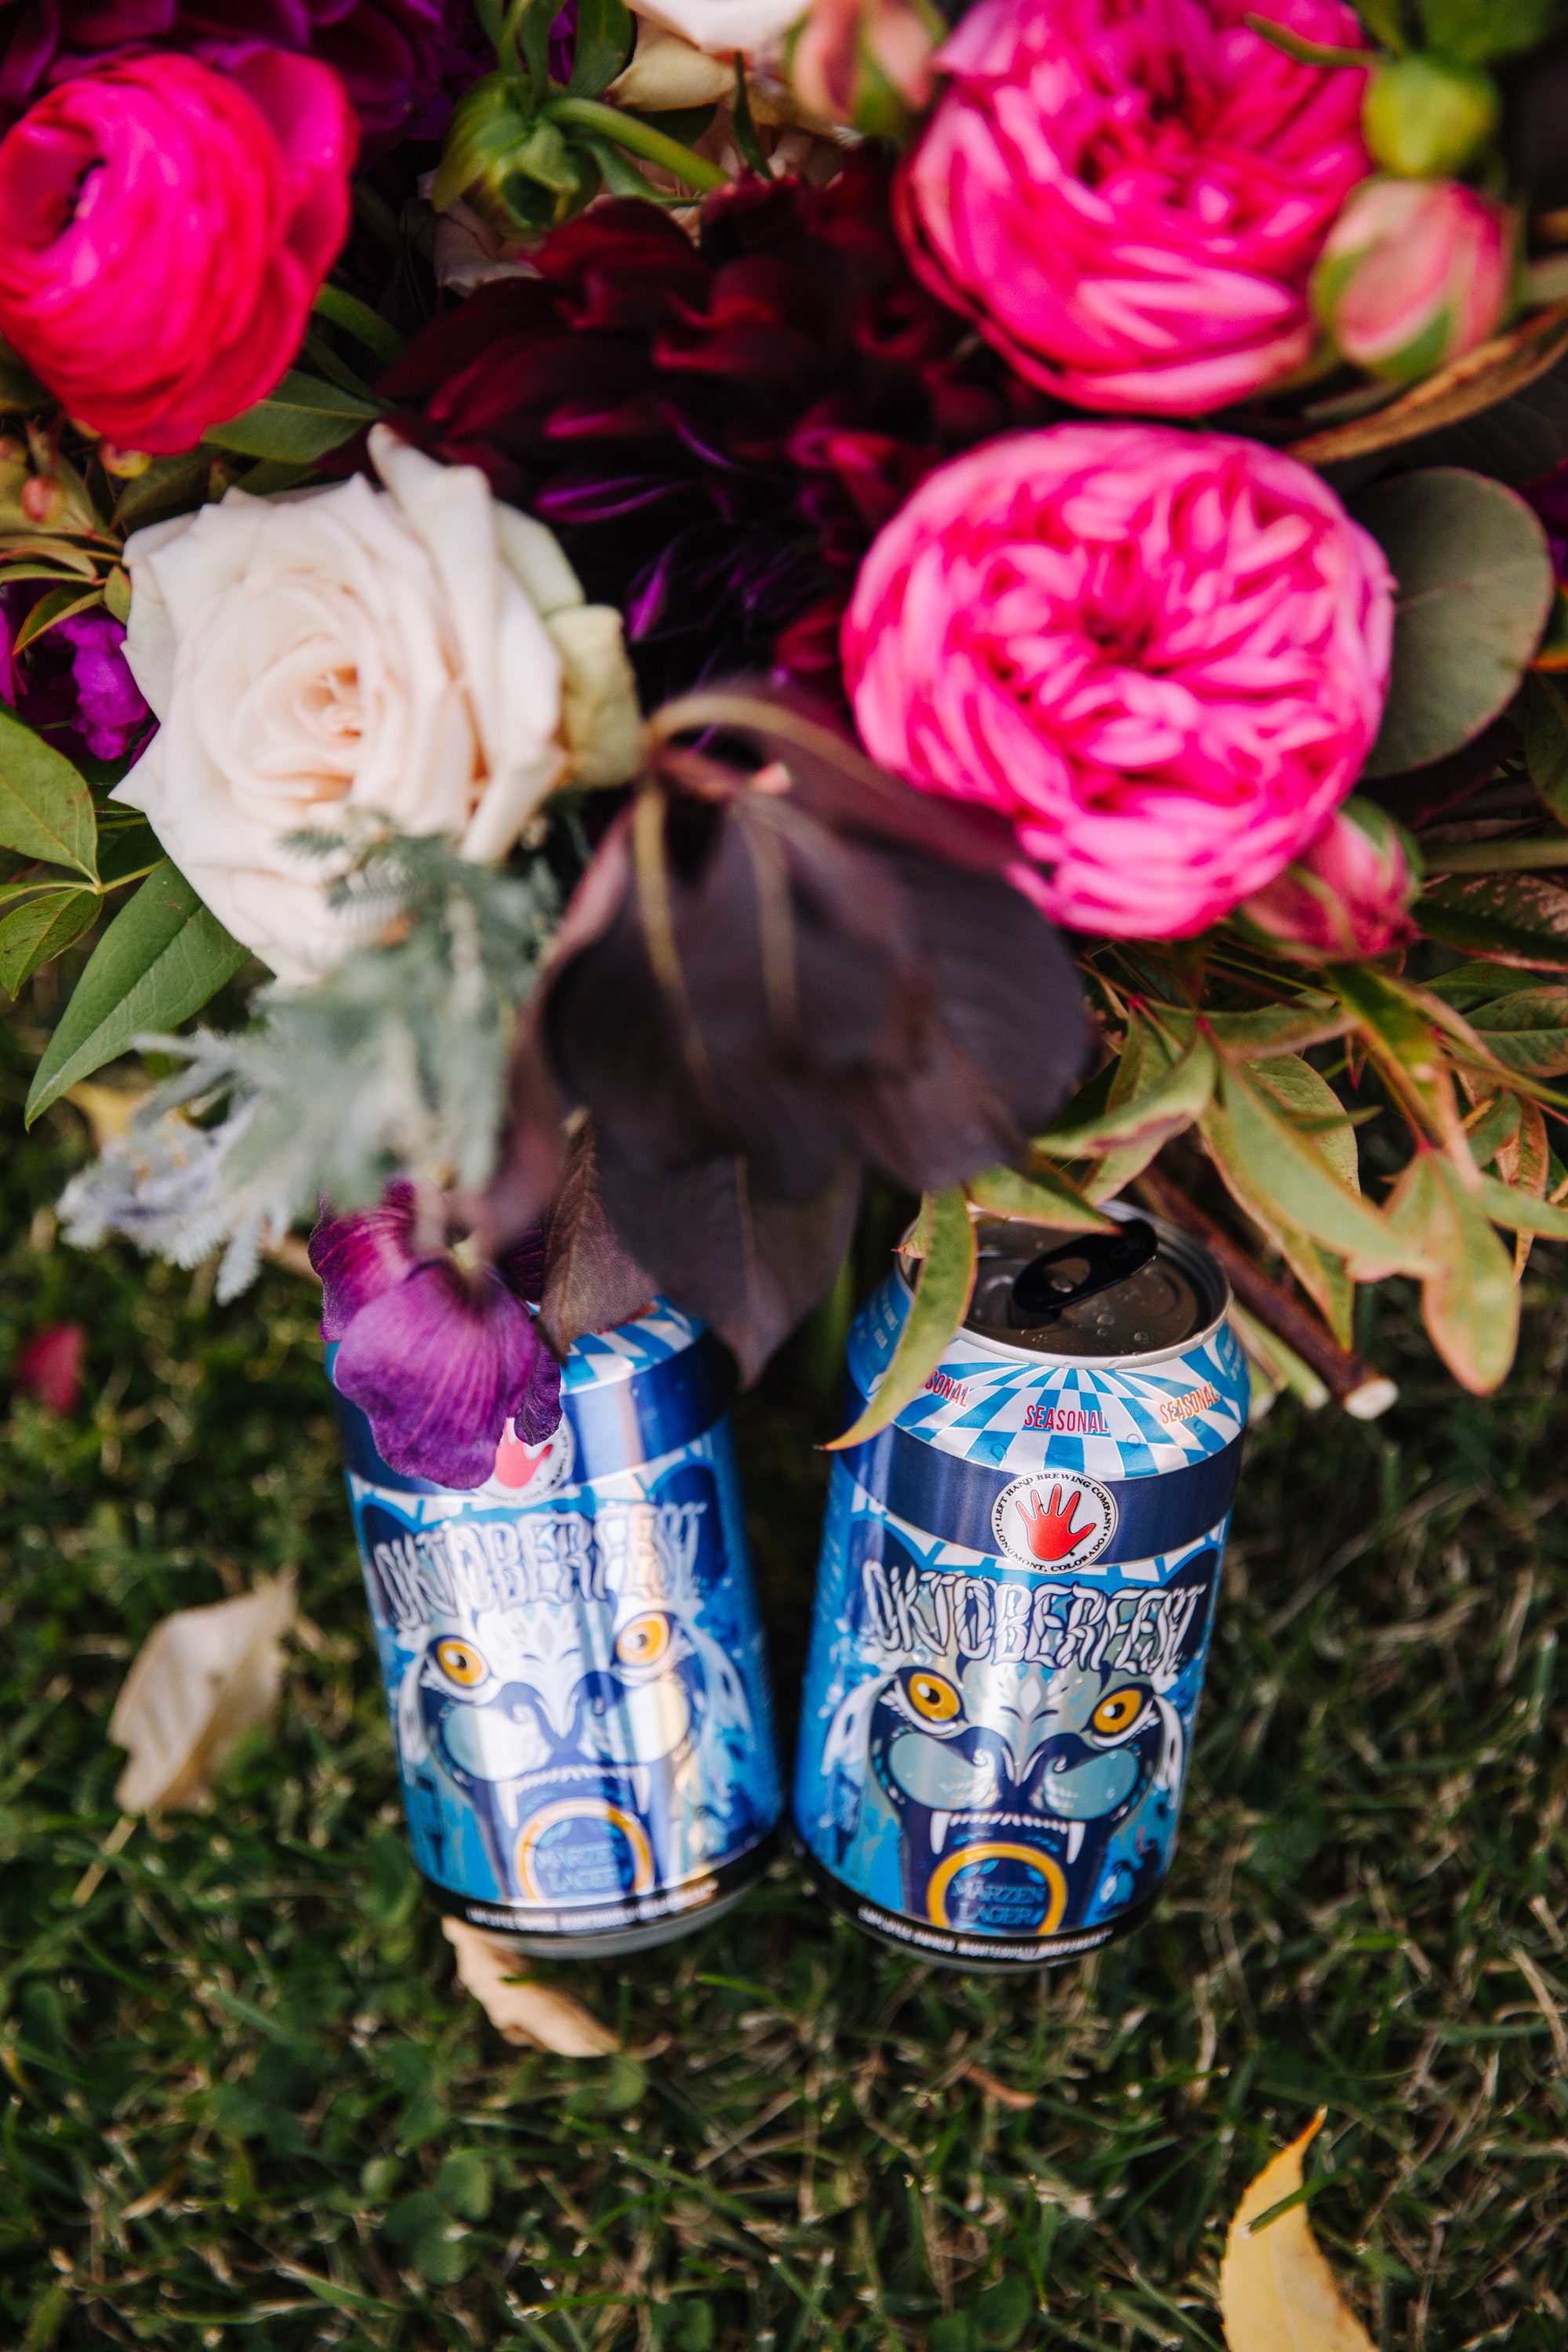 oscar blues beer, beer in weddings, beer lover wedding, colorful wedding florals, pink wedding flowers, brewery wedding